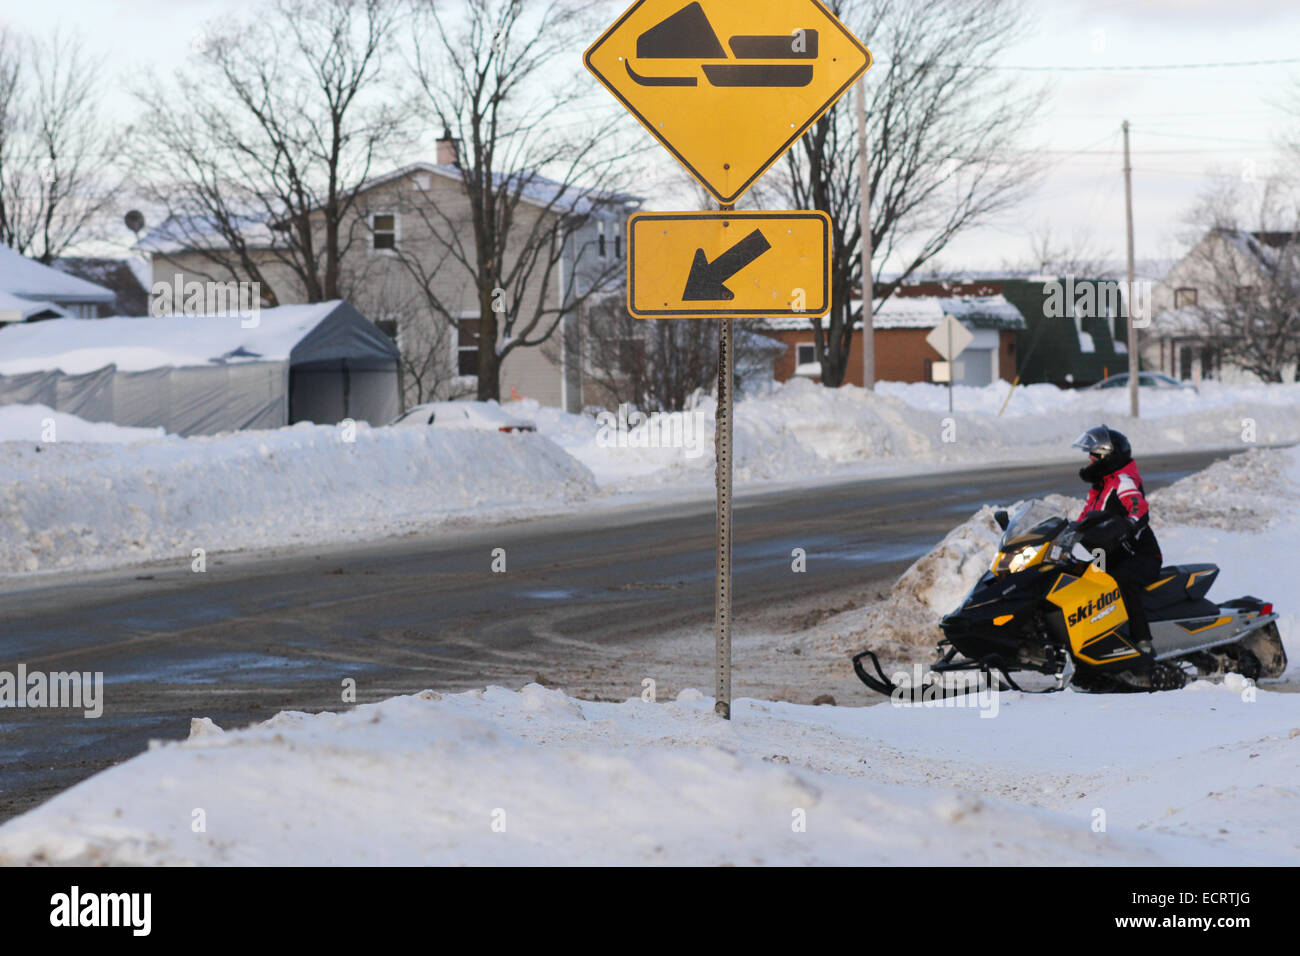 Ein Ski-Doo-Kreuzung in einer Kleinstadt in Quebec in Kanada Stockfoto